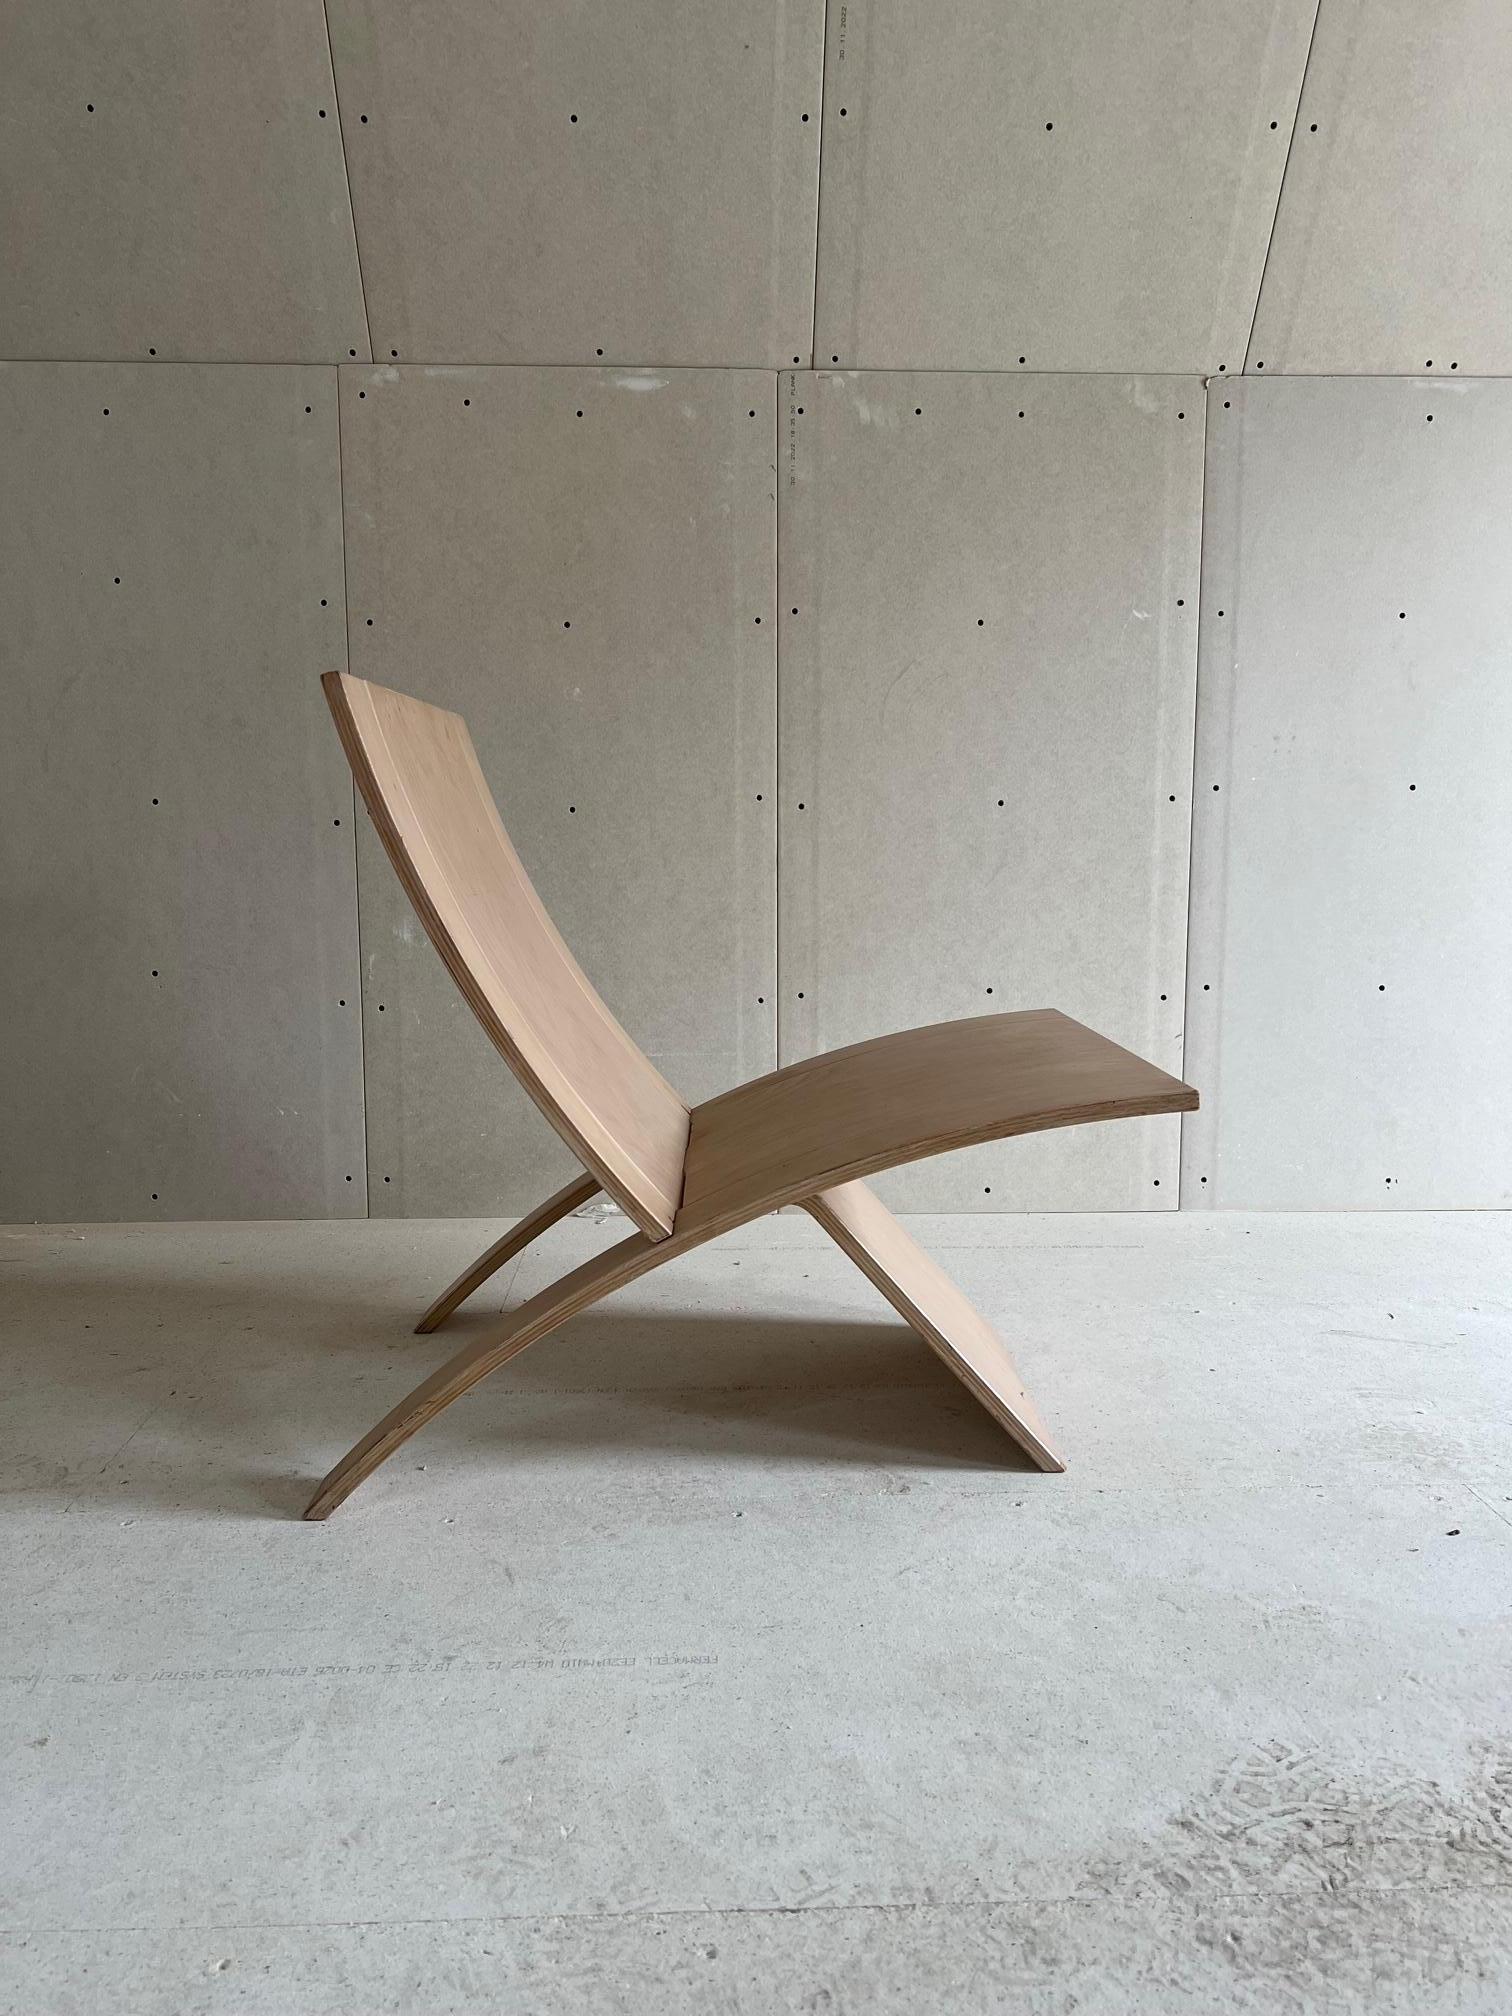 Cette chaise en bois de hêtre stratifié à deux parties est conçue par Jens Nielsen. Il est en fait inspiré par le Wegners JH512. Grâce à son design minimaliste et à son assise étonnamment confortable, cette chaise convient vraiment à n'importe